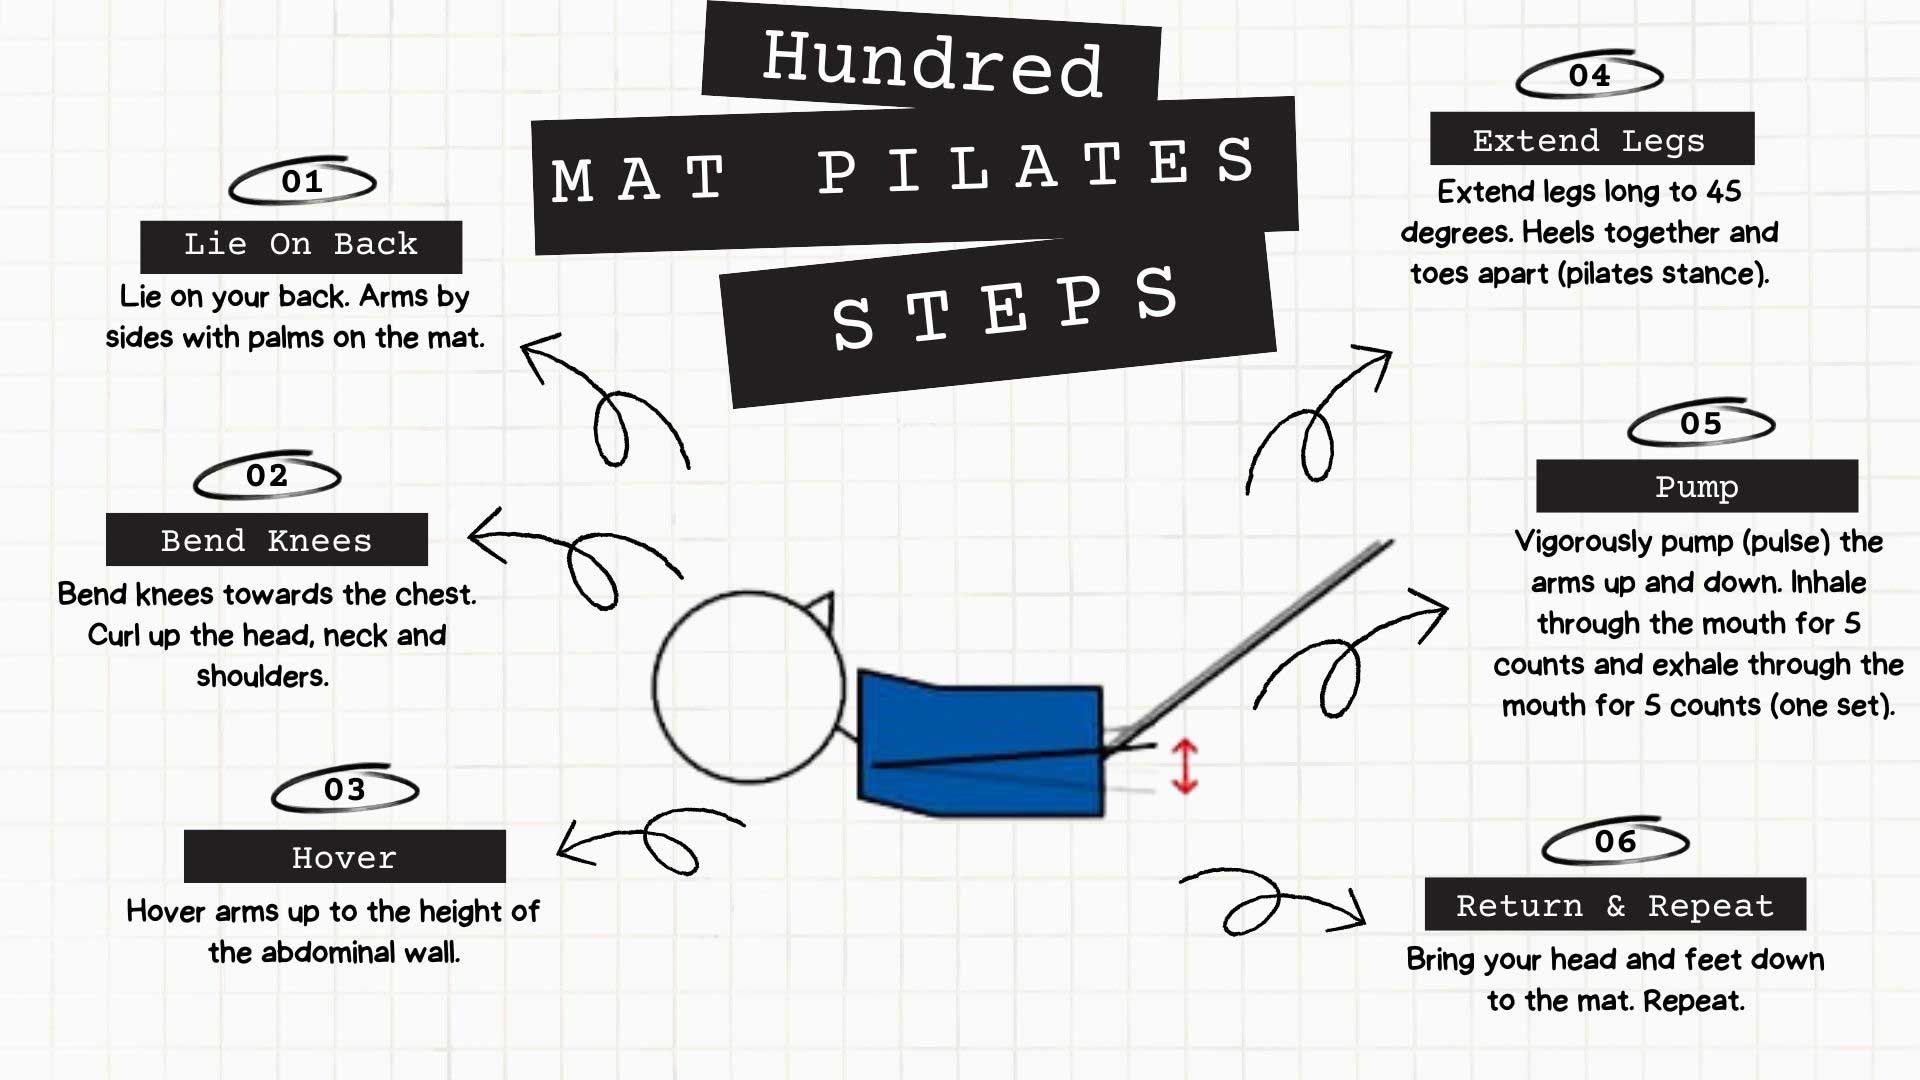 Hundred Mat Pilates Steps Infographic